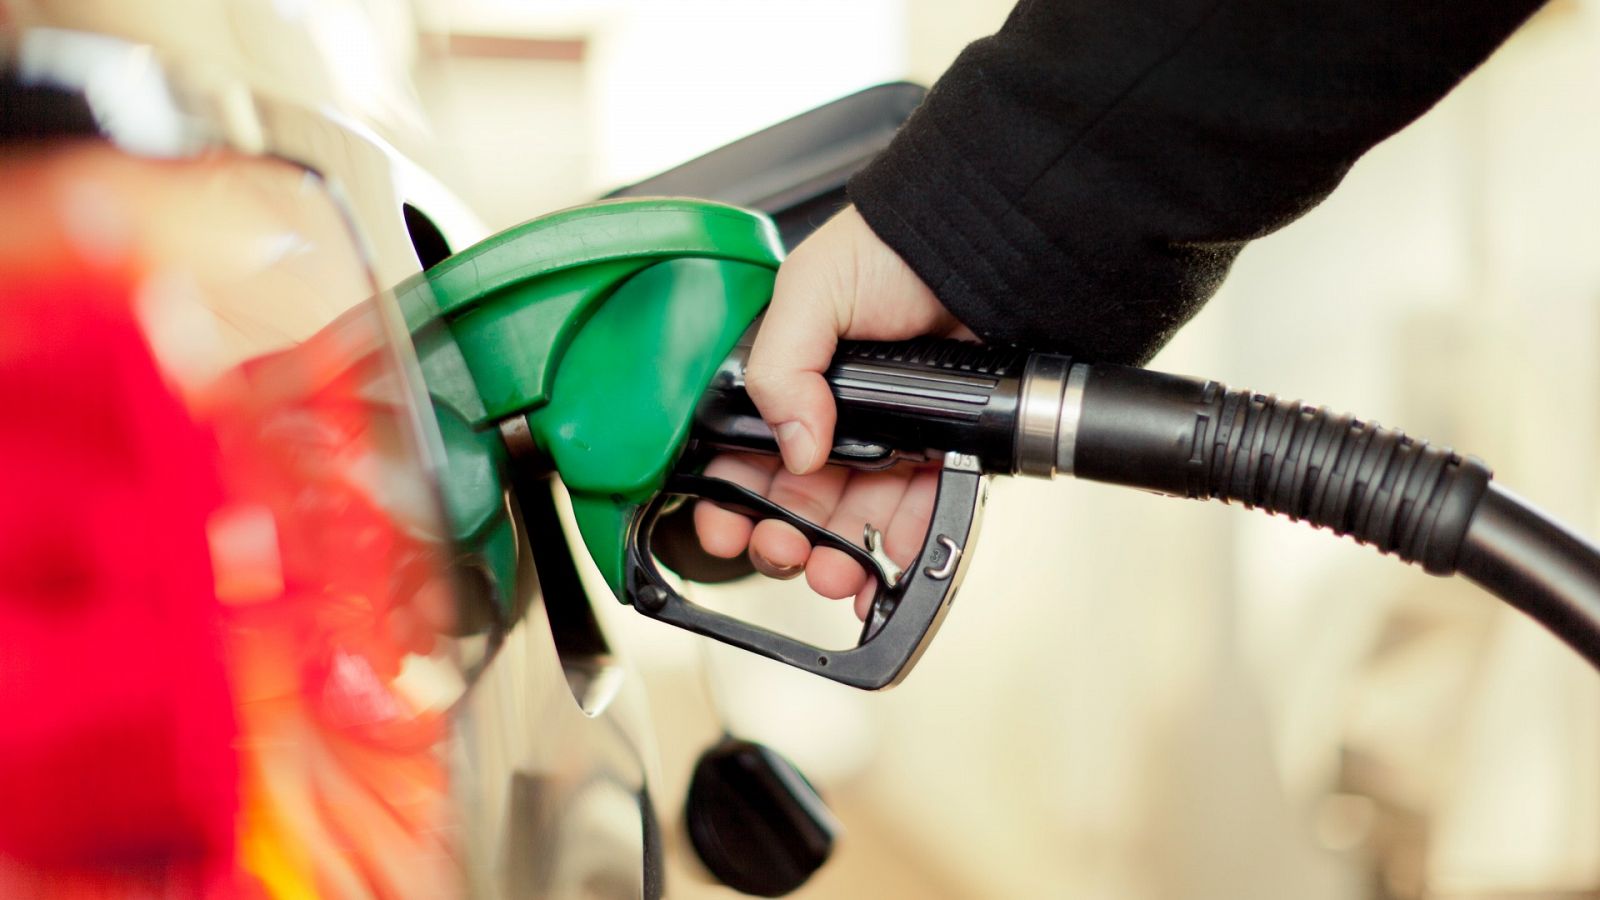 La gasolina se dispara a máximos hasta 1,53 euros por litro y supera el récord histórico de 2012